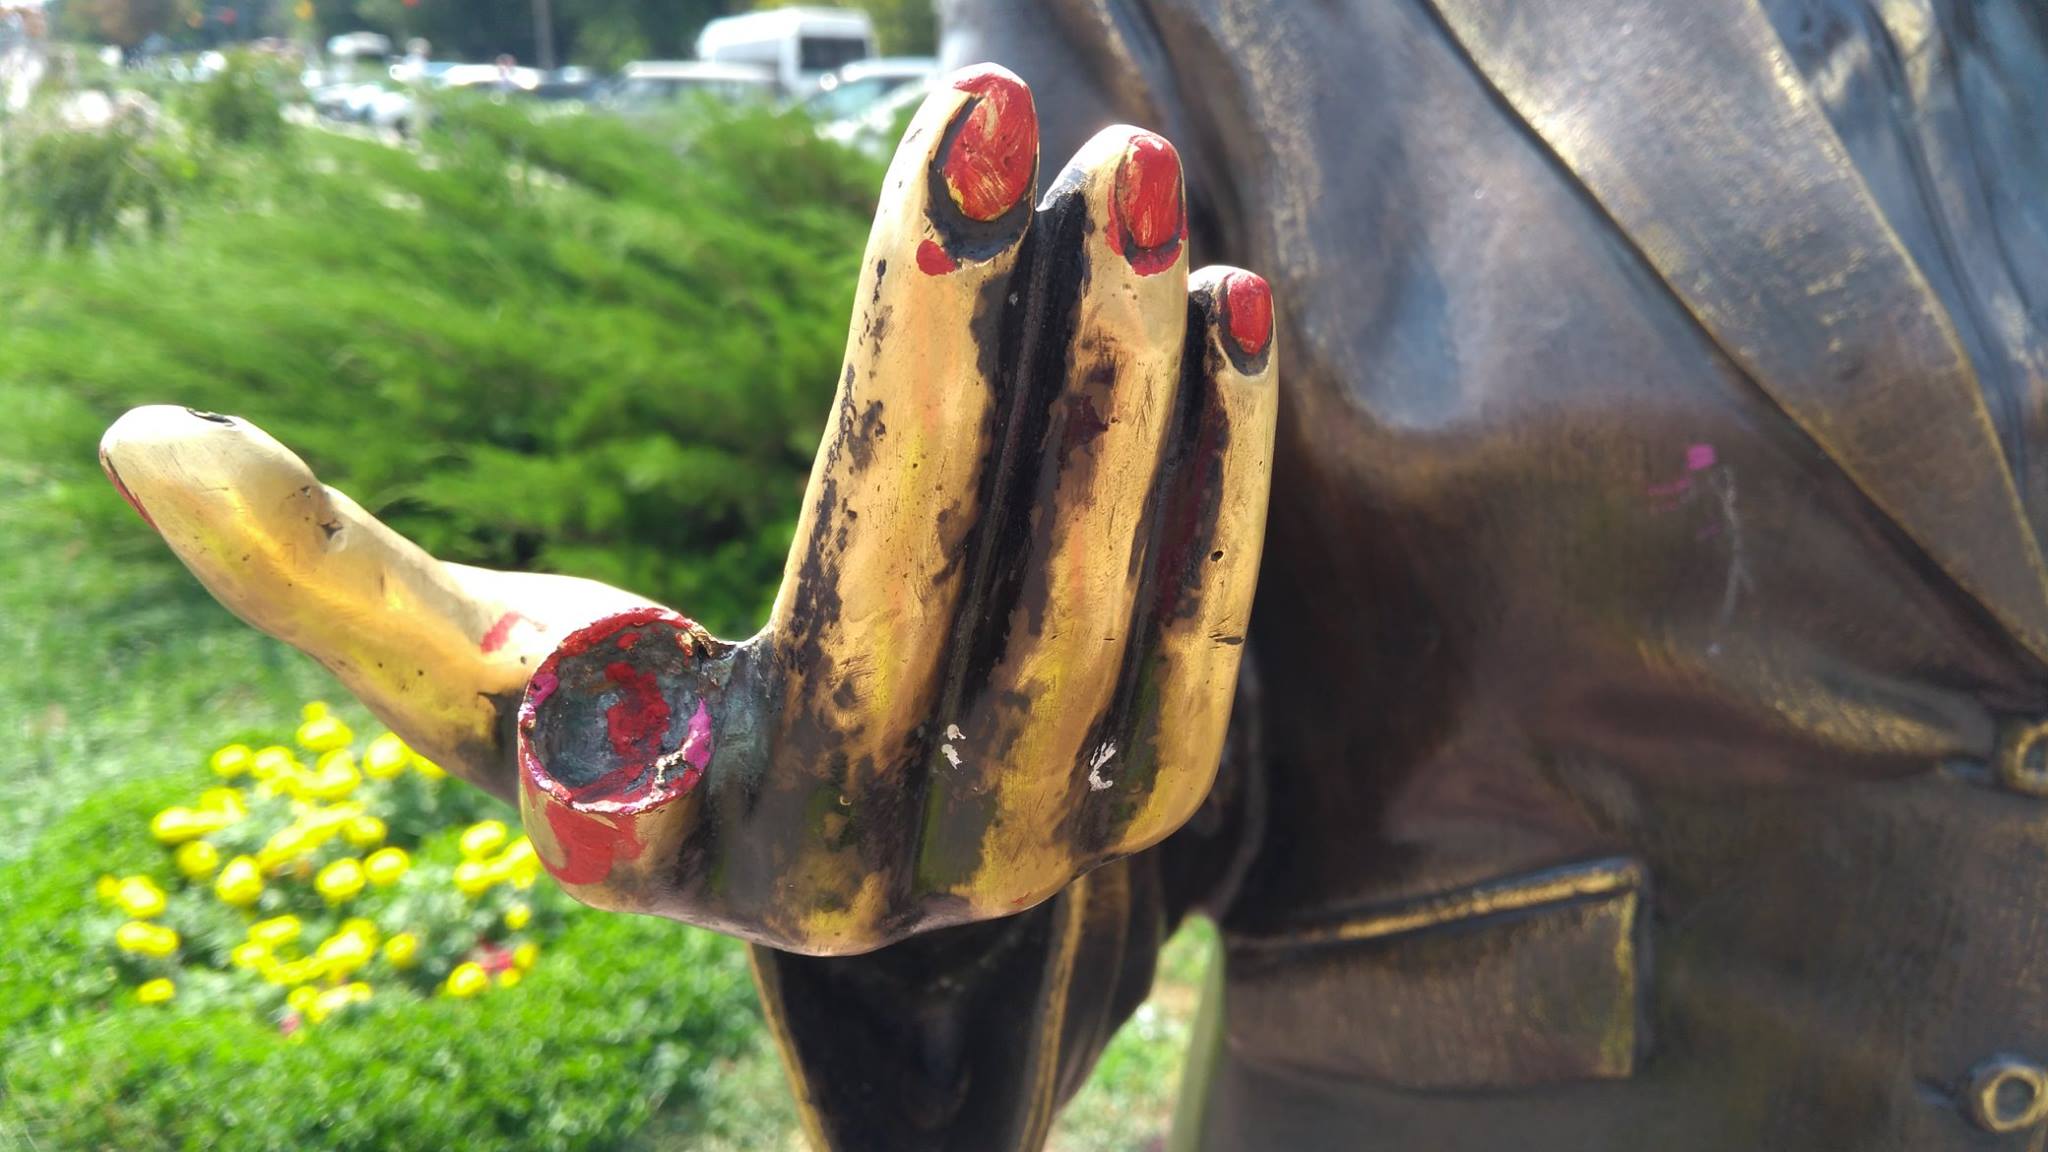 “Тягнеться до перехожих культею вказівного пальця” – вандали вкотре познущалися над скульптурою у Запоріжжі (фото)